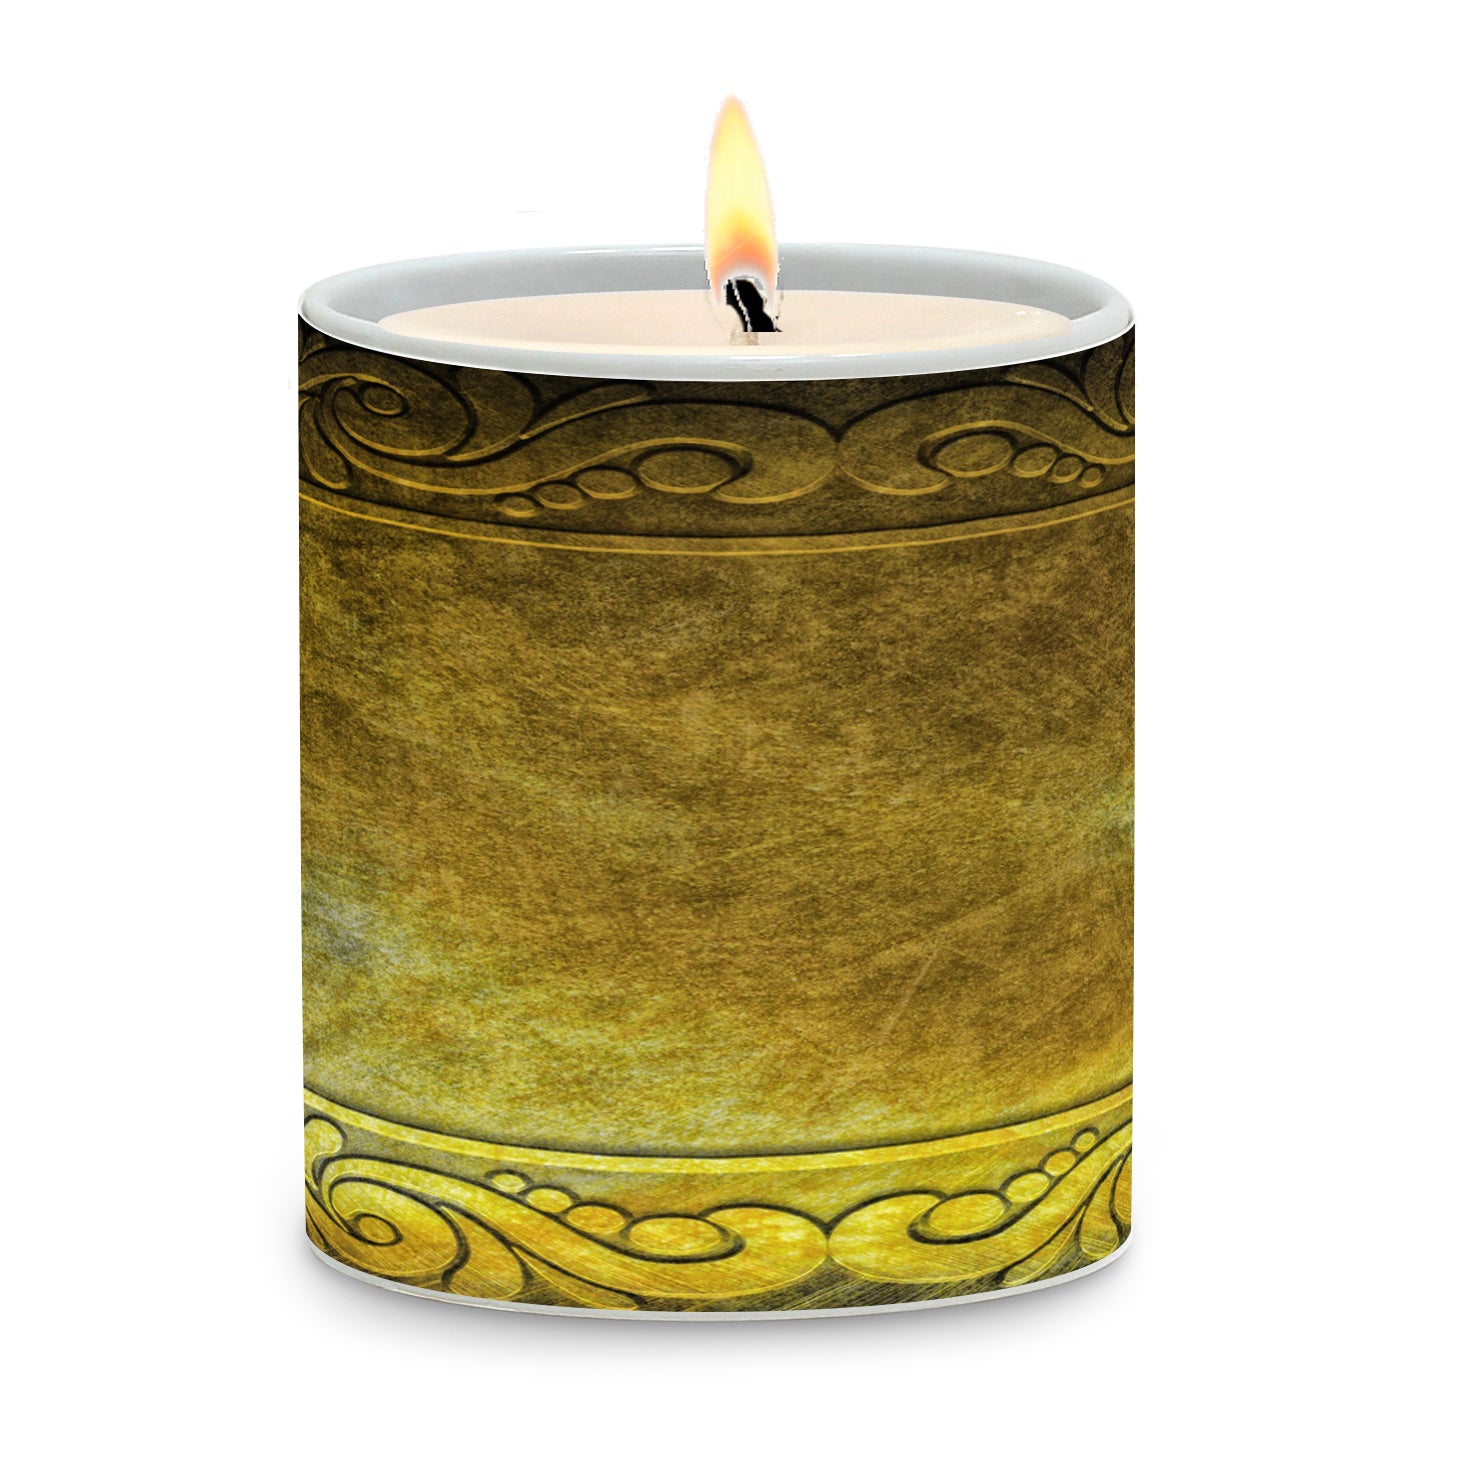 SUBLIMART: Tiles - Porcelain Soy Wax Candle (Design #TIL06)